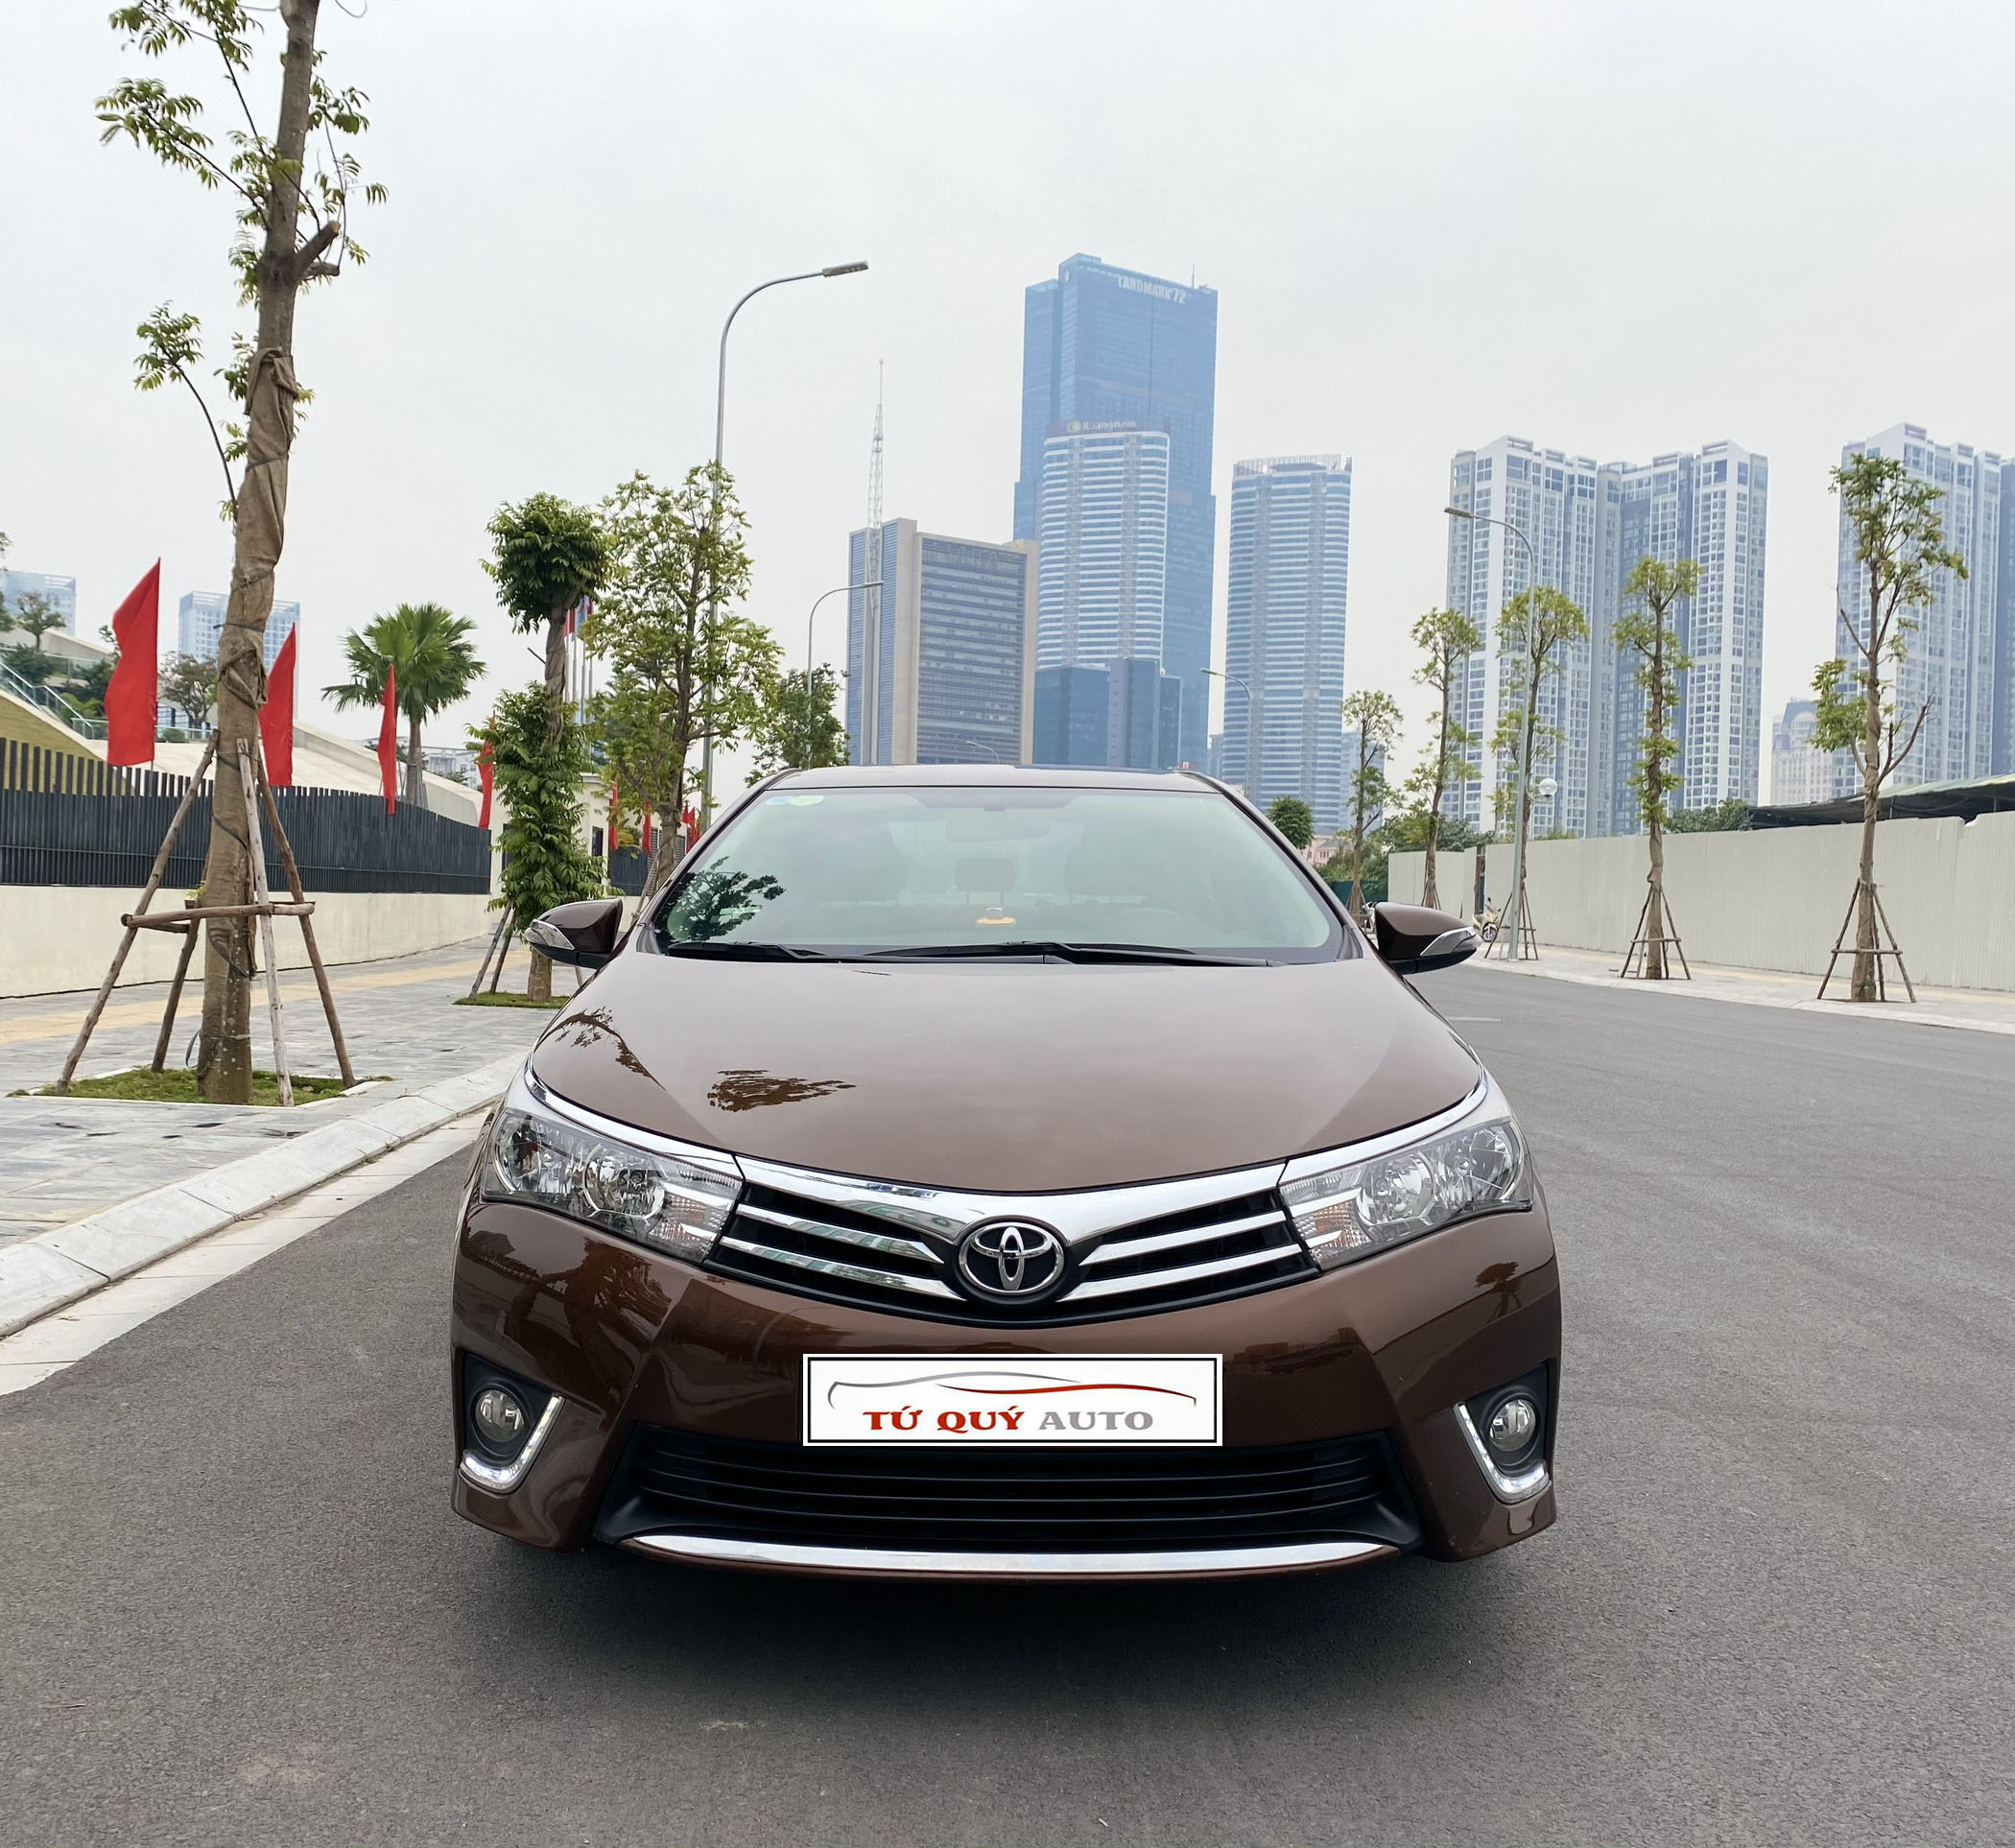 Mua Bán Xe Toyota Corolla Altis 2014 Giá Rẻ Toàn quốc